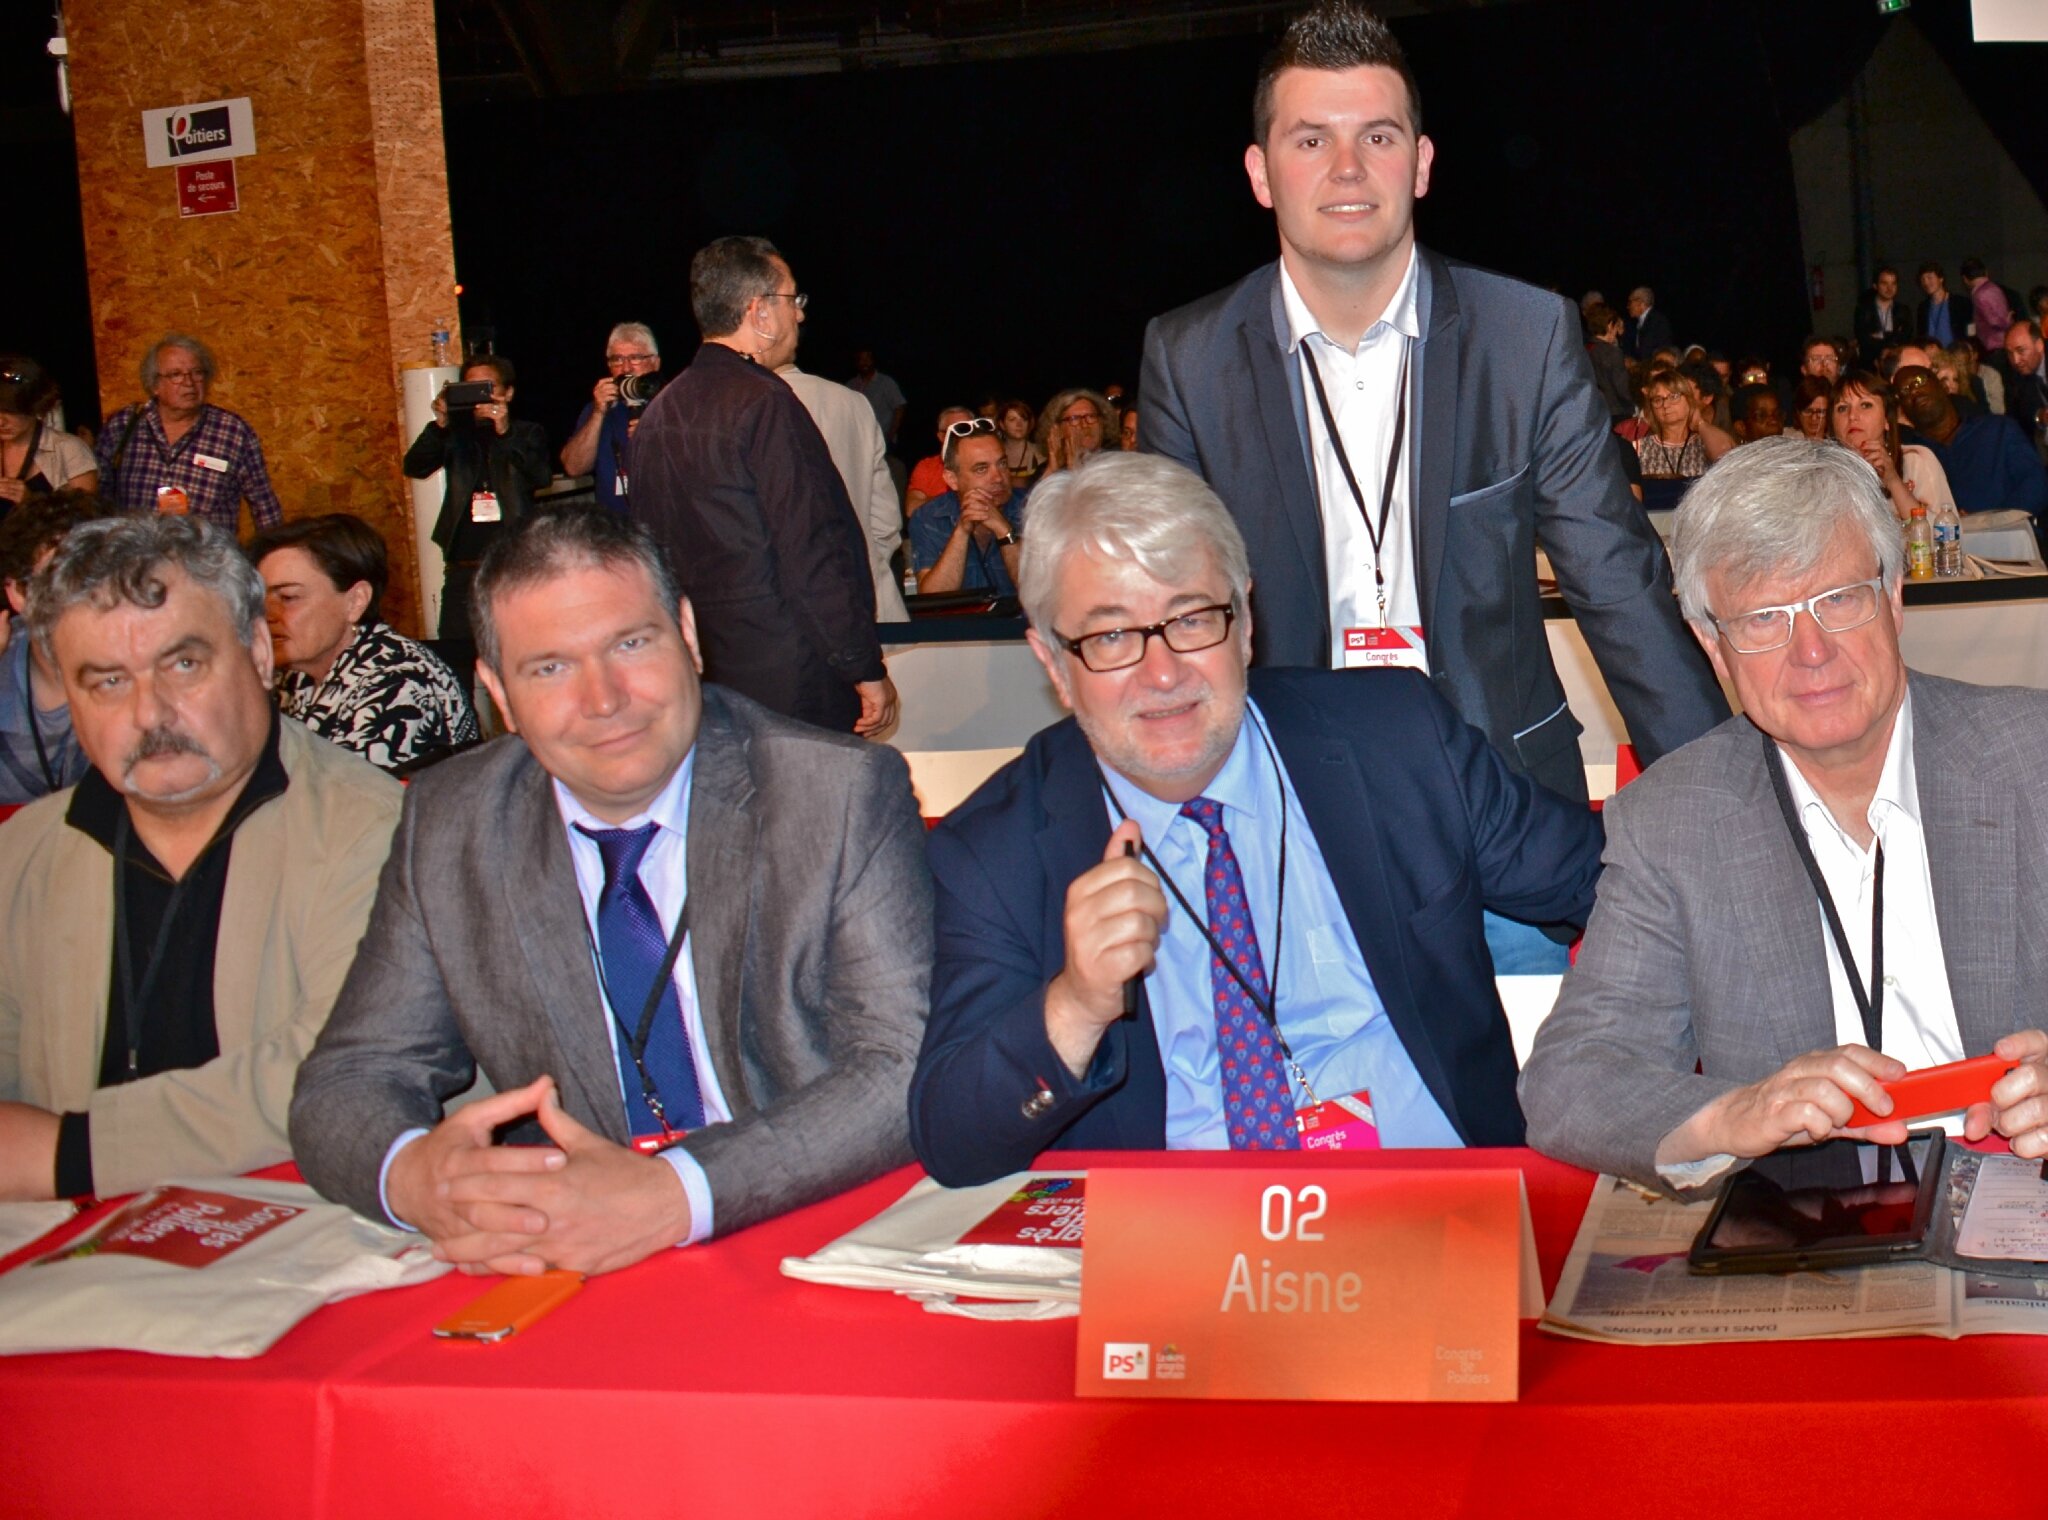 2015 CONGRES DE POITIERS 2015 délégation Aisne